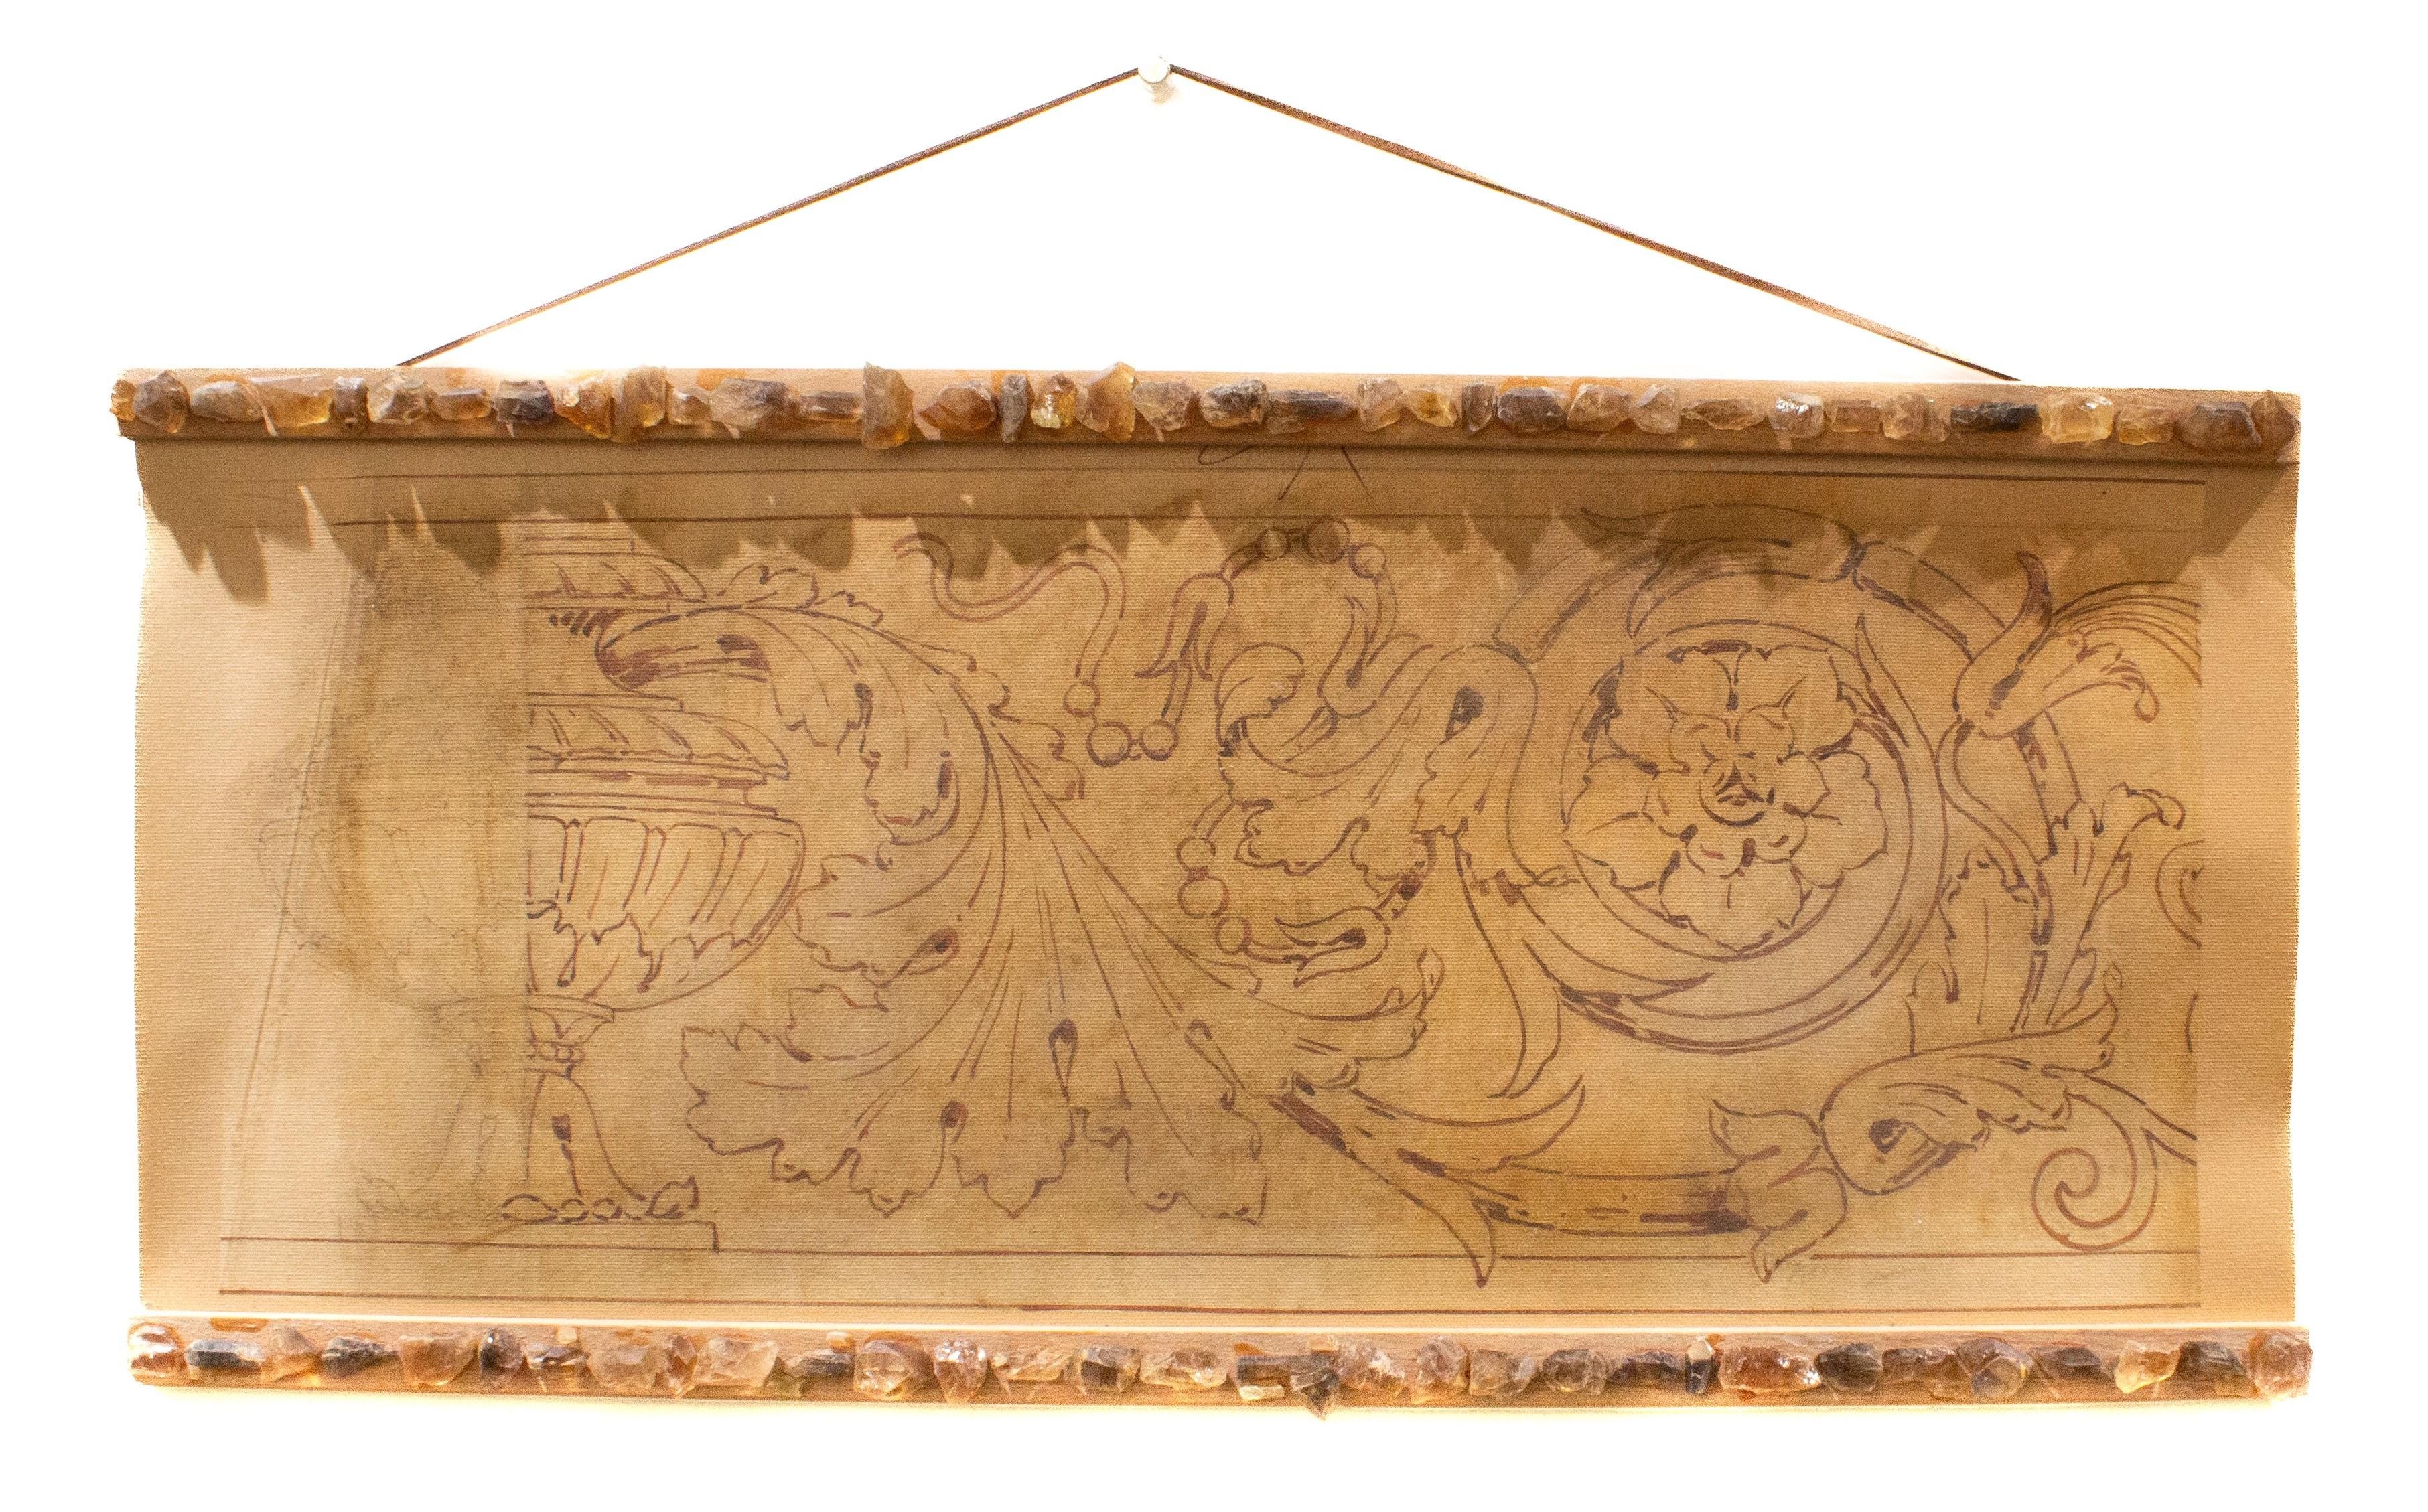 Motif de fresque spolvero italienne du XVIIIe siècle imprimé sur toile et encadré avec un cadre personnalisé et des cristaux de citrine.

Le Spolvero est une méthode artistique qui consiste à transférer un dessin d'une impression sur la surface